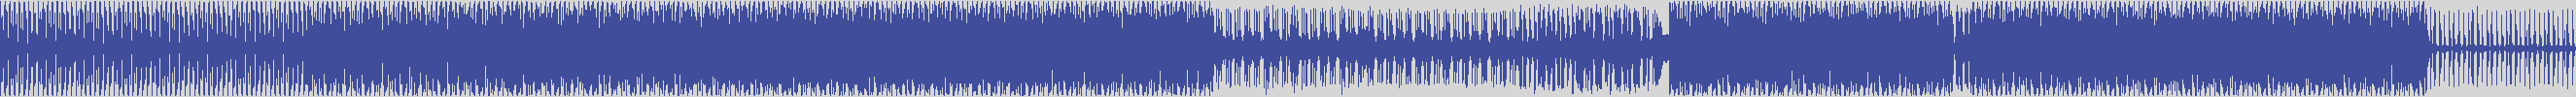 atomic_recordings [AR016] Bernardo Campos - Fai [Original Mix] audio wave form